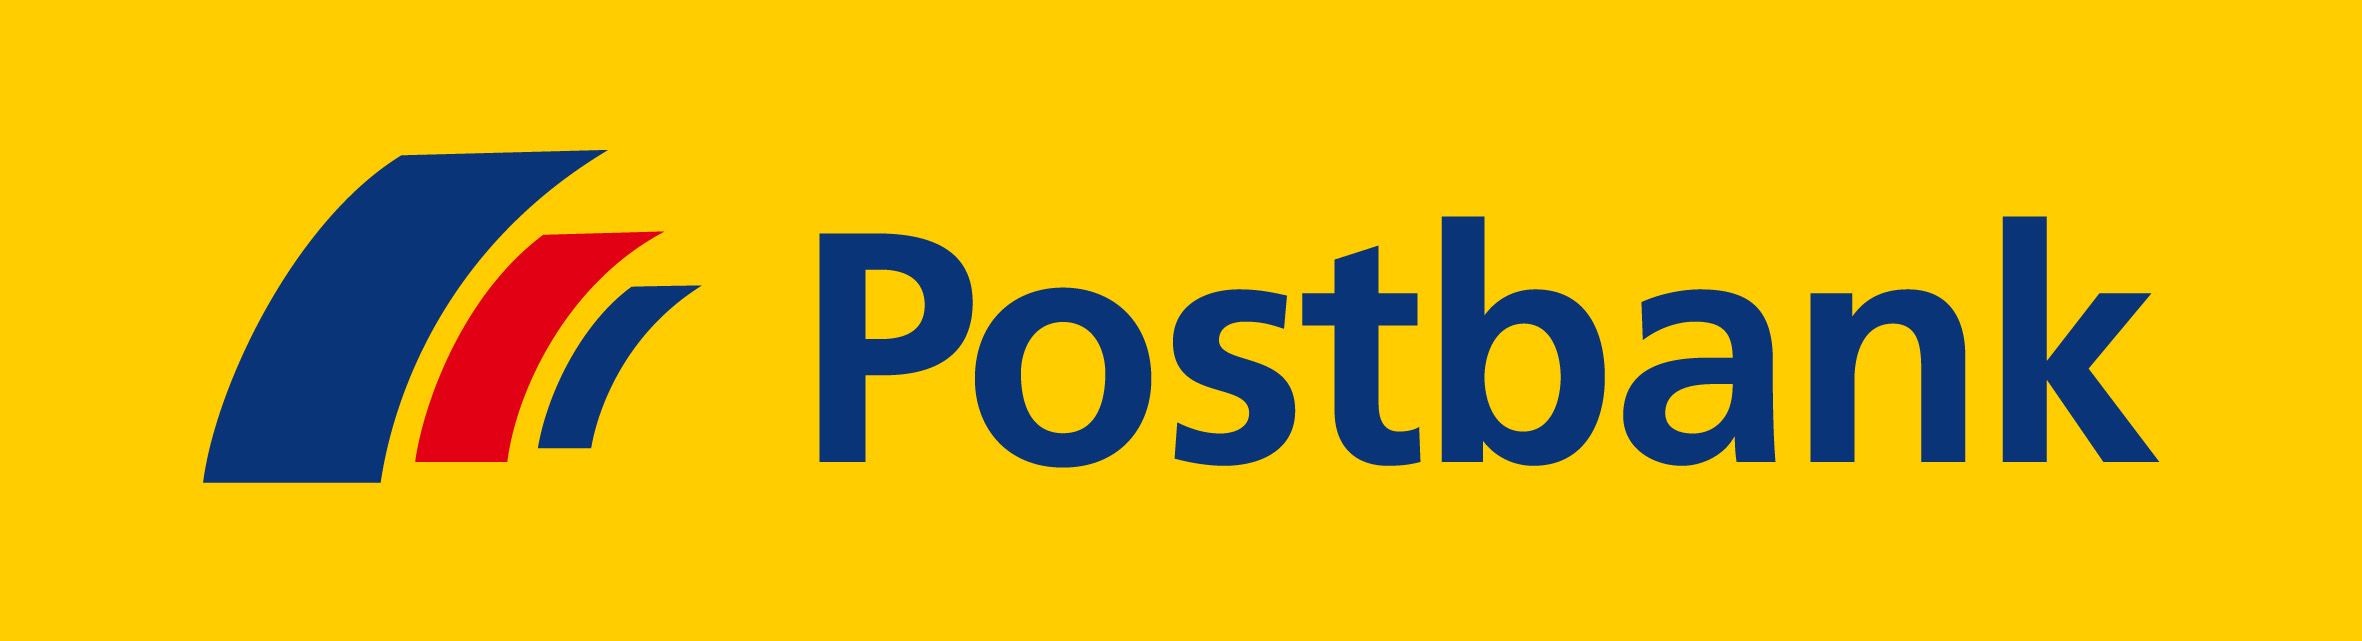 Postbank Logo - Postbank: Logos